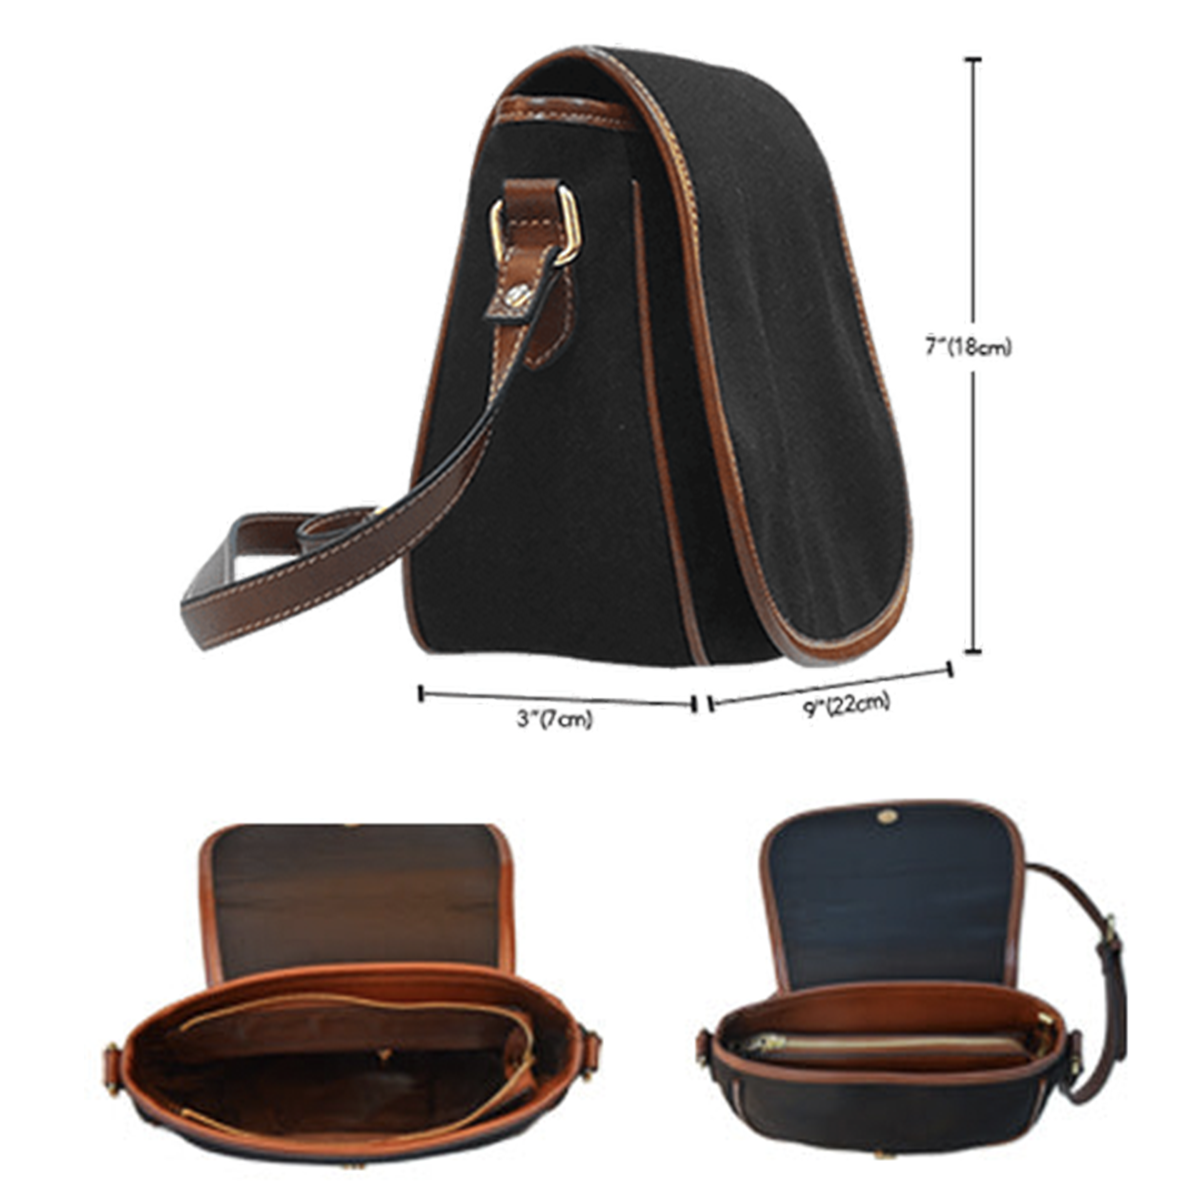 Cairns Tartan Saddle Handbags